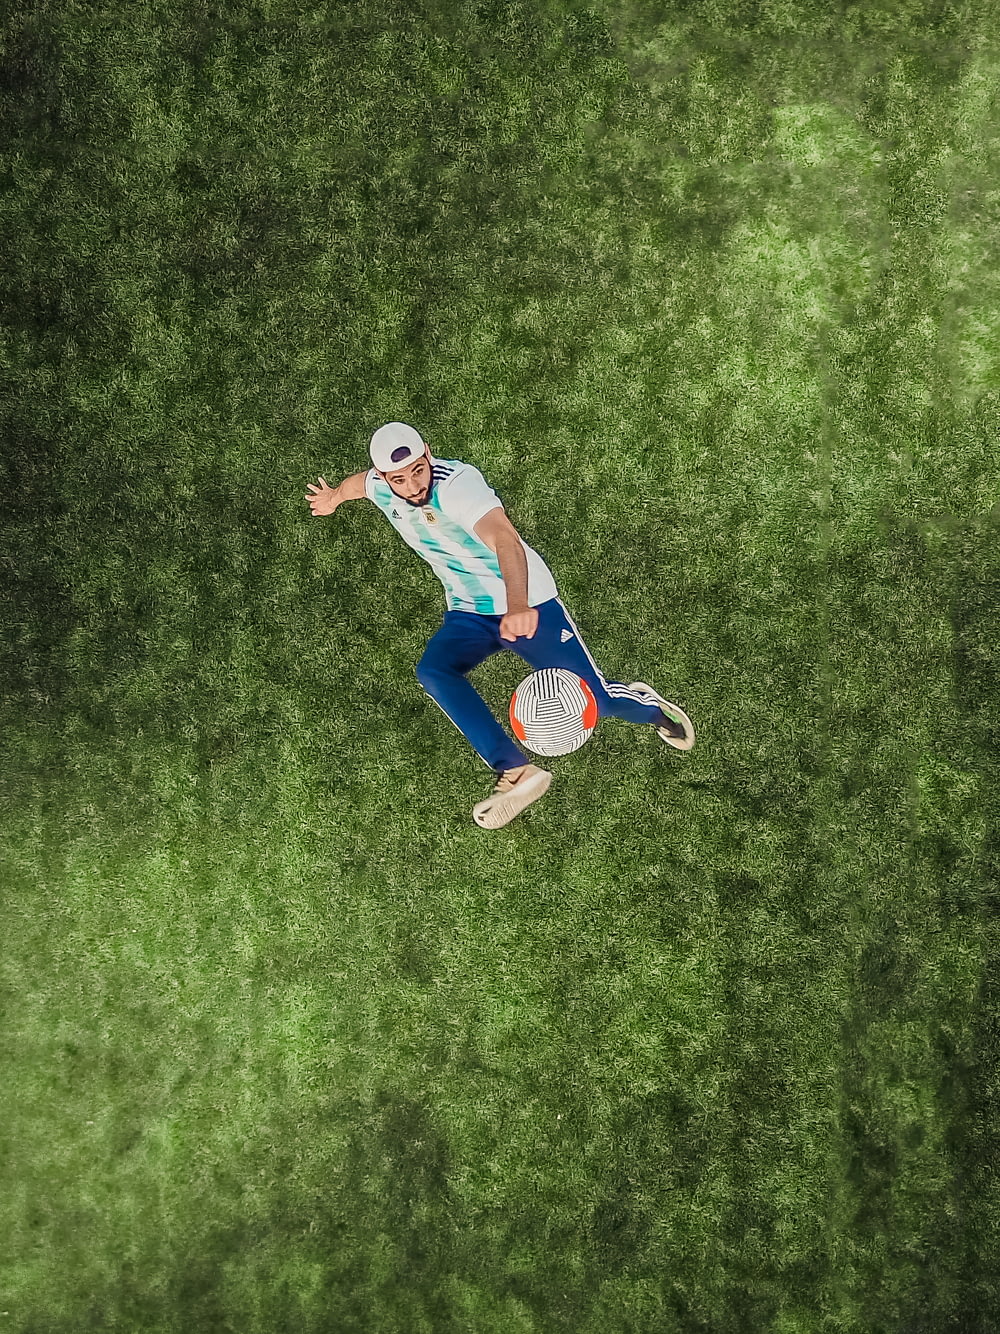 Vista aérea del hombre jugando a la pelota de fútbol en la hierba